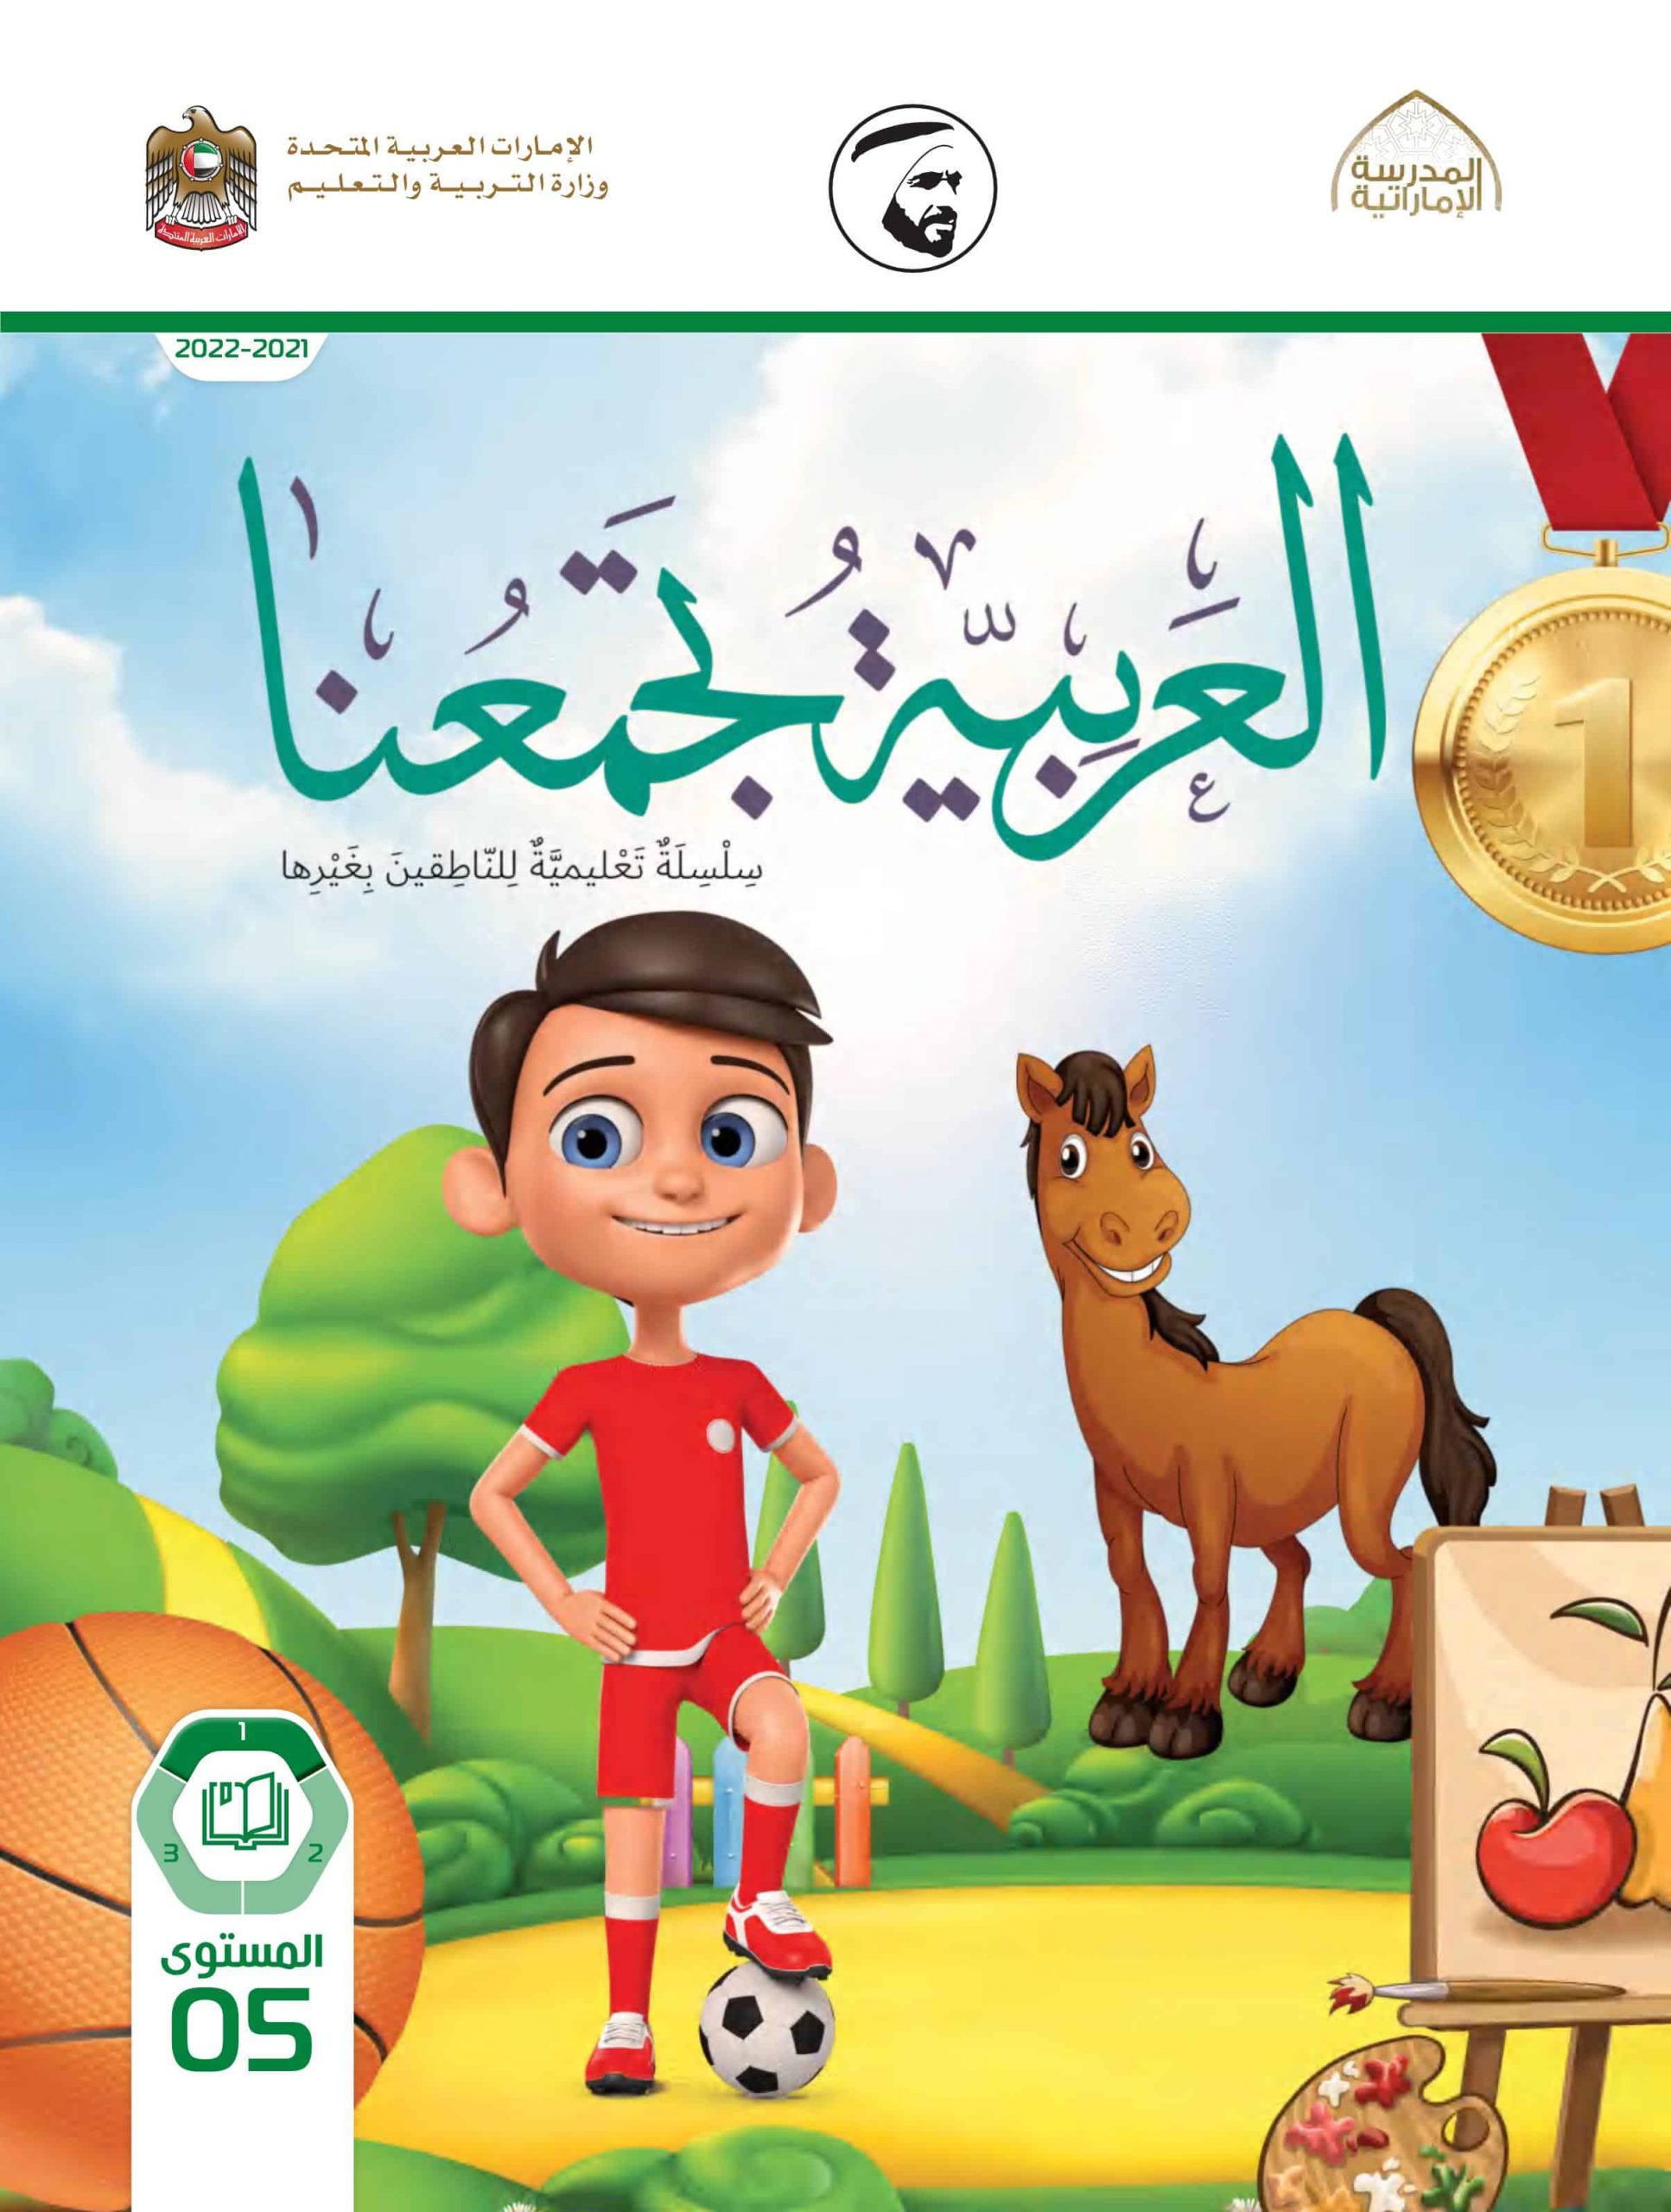 كتاب الطالب لغير الناطقين بها الفصل الدراسي الأول 2021-2022 الصف الخامس مادة اللغة العربية 